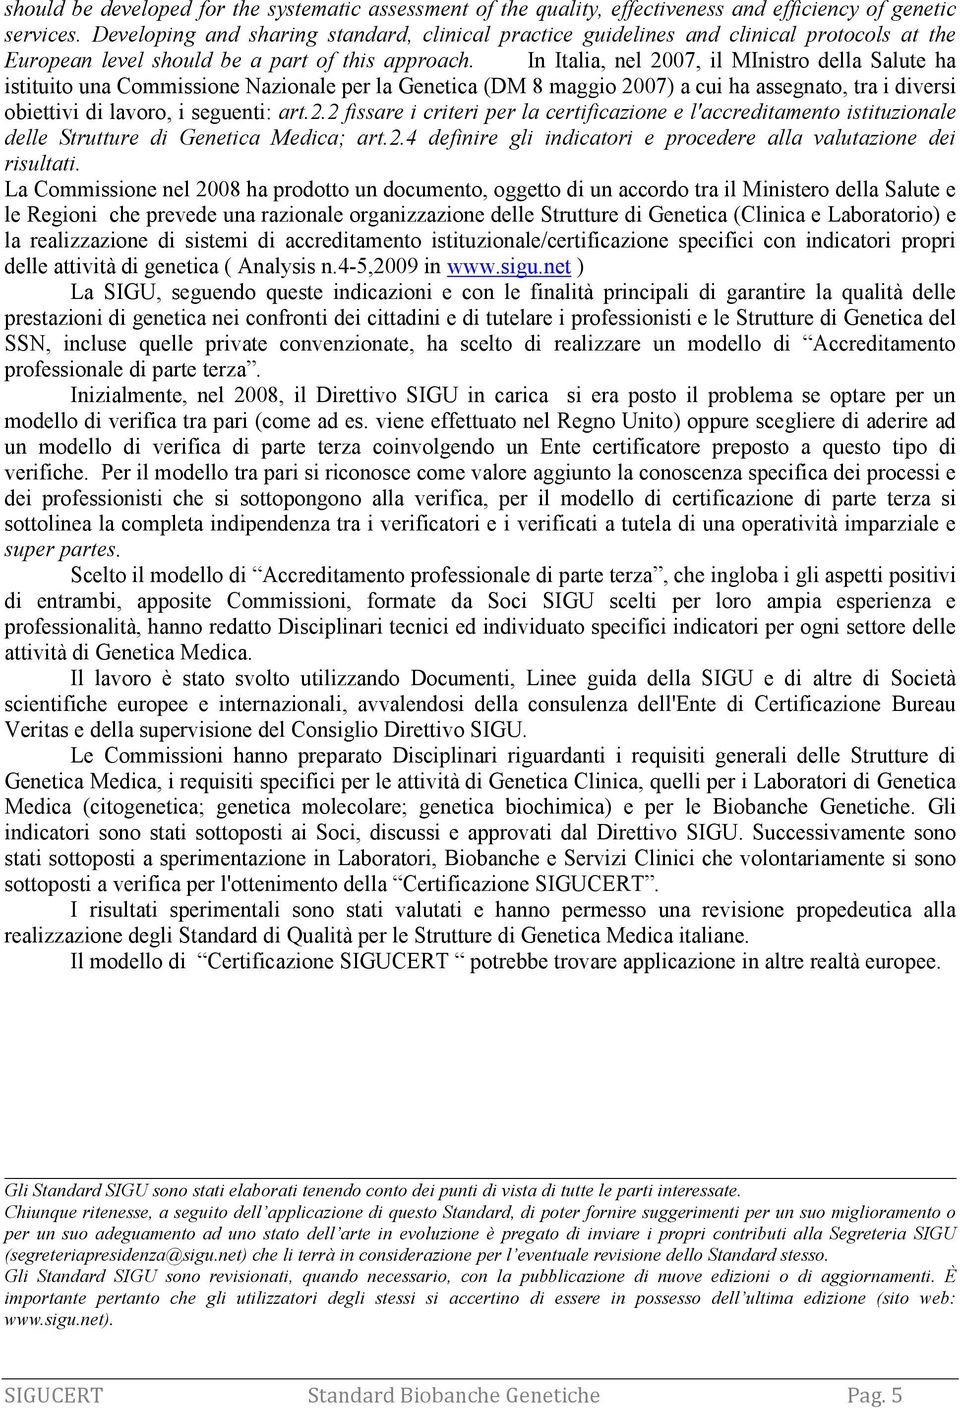 In Italia, nel 2007, il MInistro della Salute ha istituito una Commissione Nazionale per la Genetica (DM 8 maggio 2007) a cui ha assegnato, tra i diversi obiettivi di lavoro, i seguenti: art.2.2 fissare i criteri per la certificazione e l'accreditamento istituzionale delle Strutture di Genetica Medica; art.